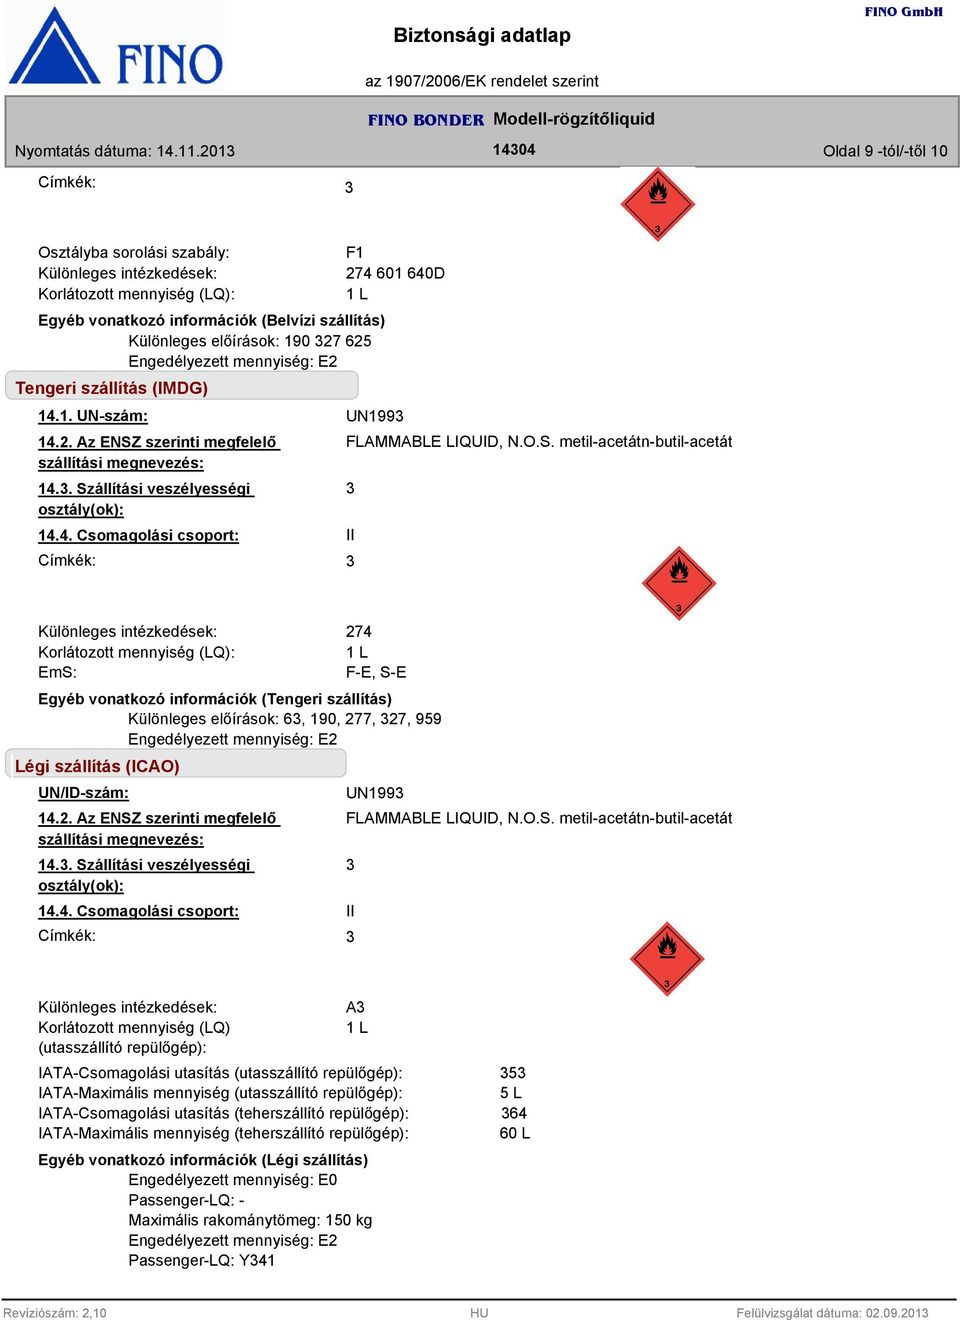 O.S. metil-acetátn-butil-acetát II Különleges intézkedések: Korlátozott mennyiség (LQ): EmS: 274 1 L F-E, S-E Egyéb vonatkozó információk (Tengeri szállítás) Különleges előírások: 6, 190, 277, 27,